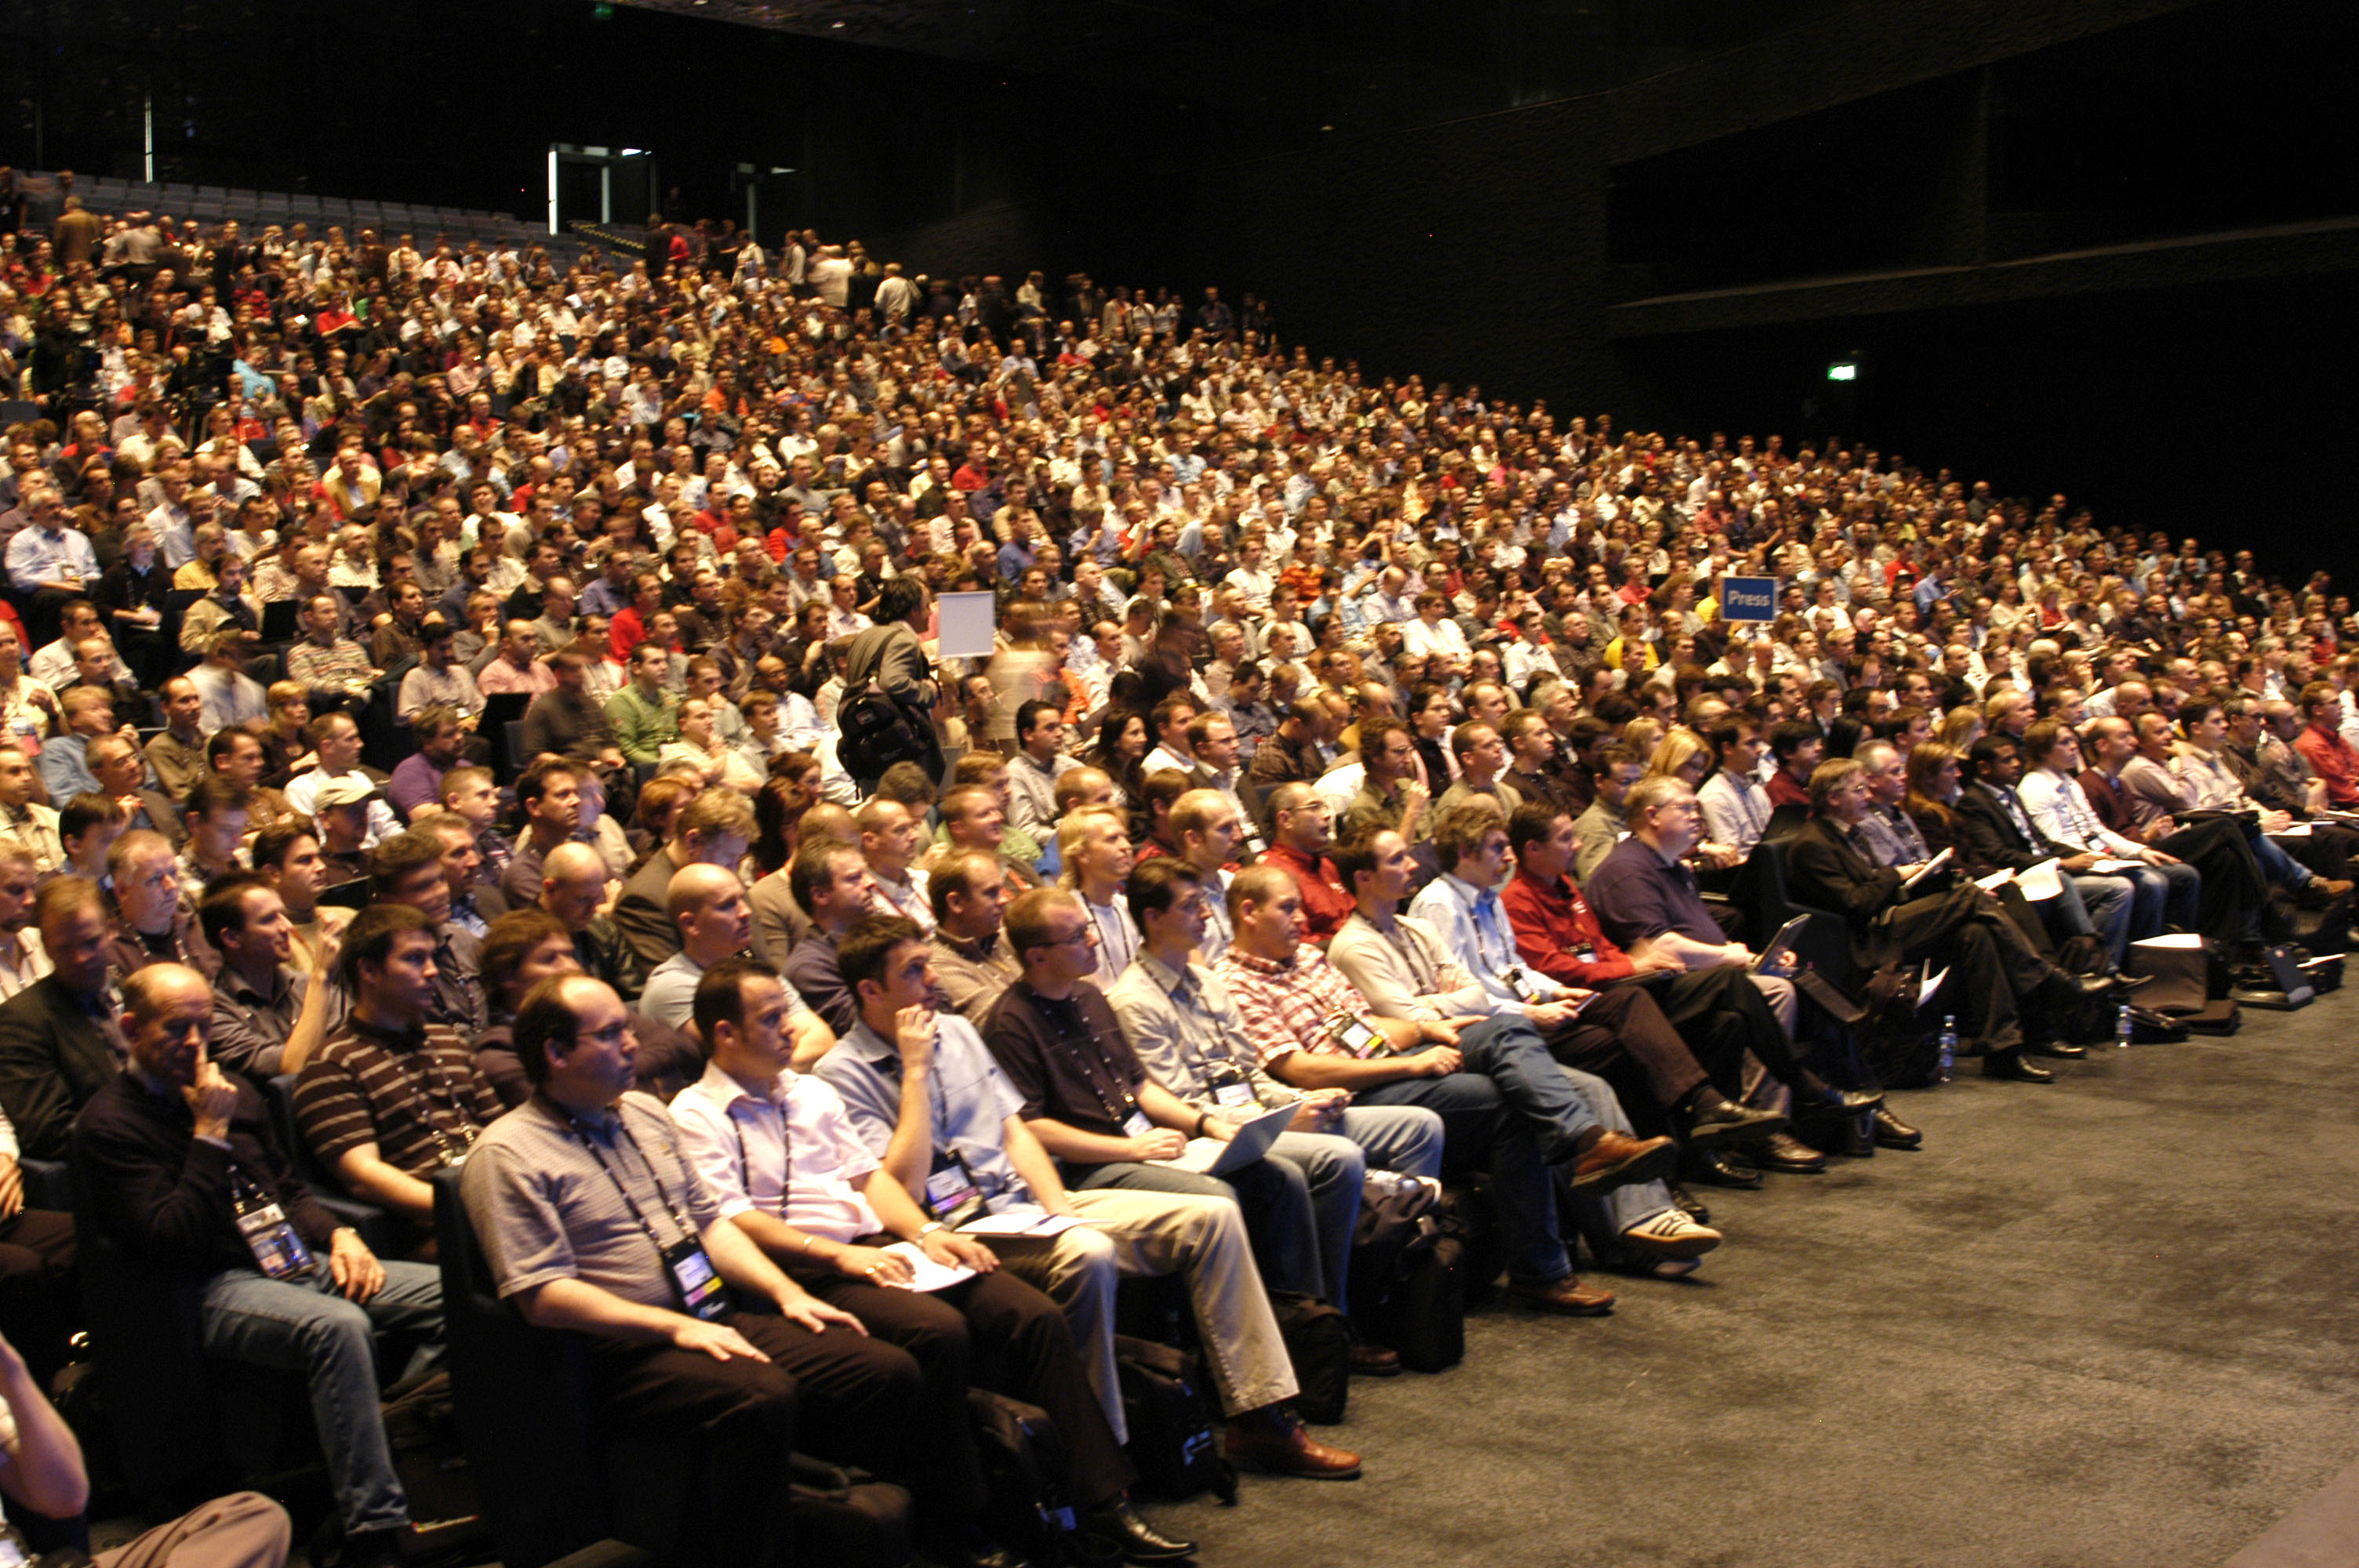 Форум кучах. Полный зал людей. Много людей в зале. Большая аудитория людей. Зрительный зал с людьми.